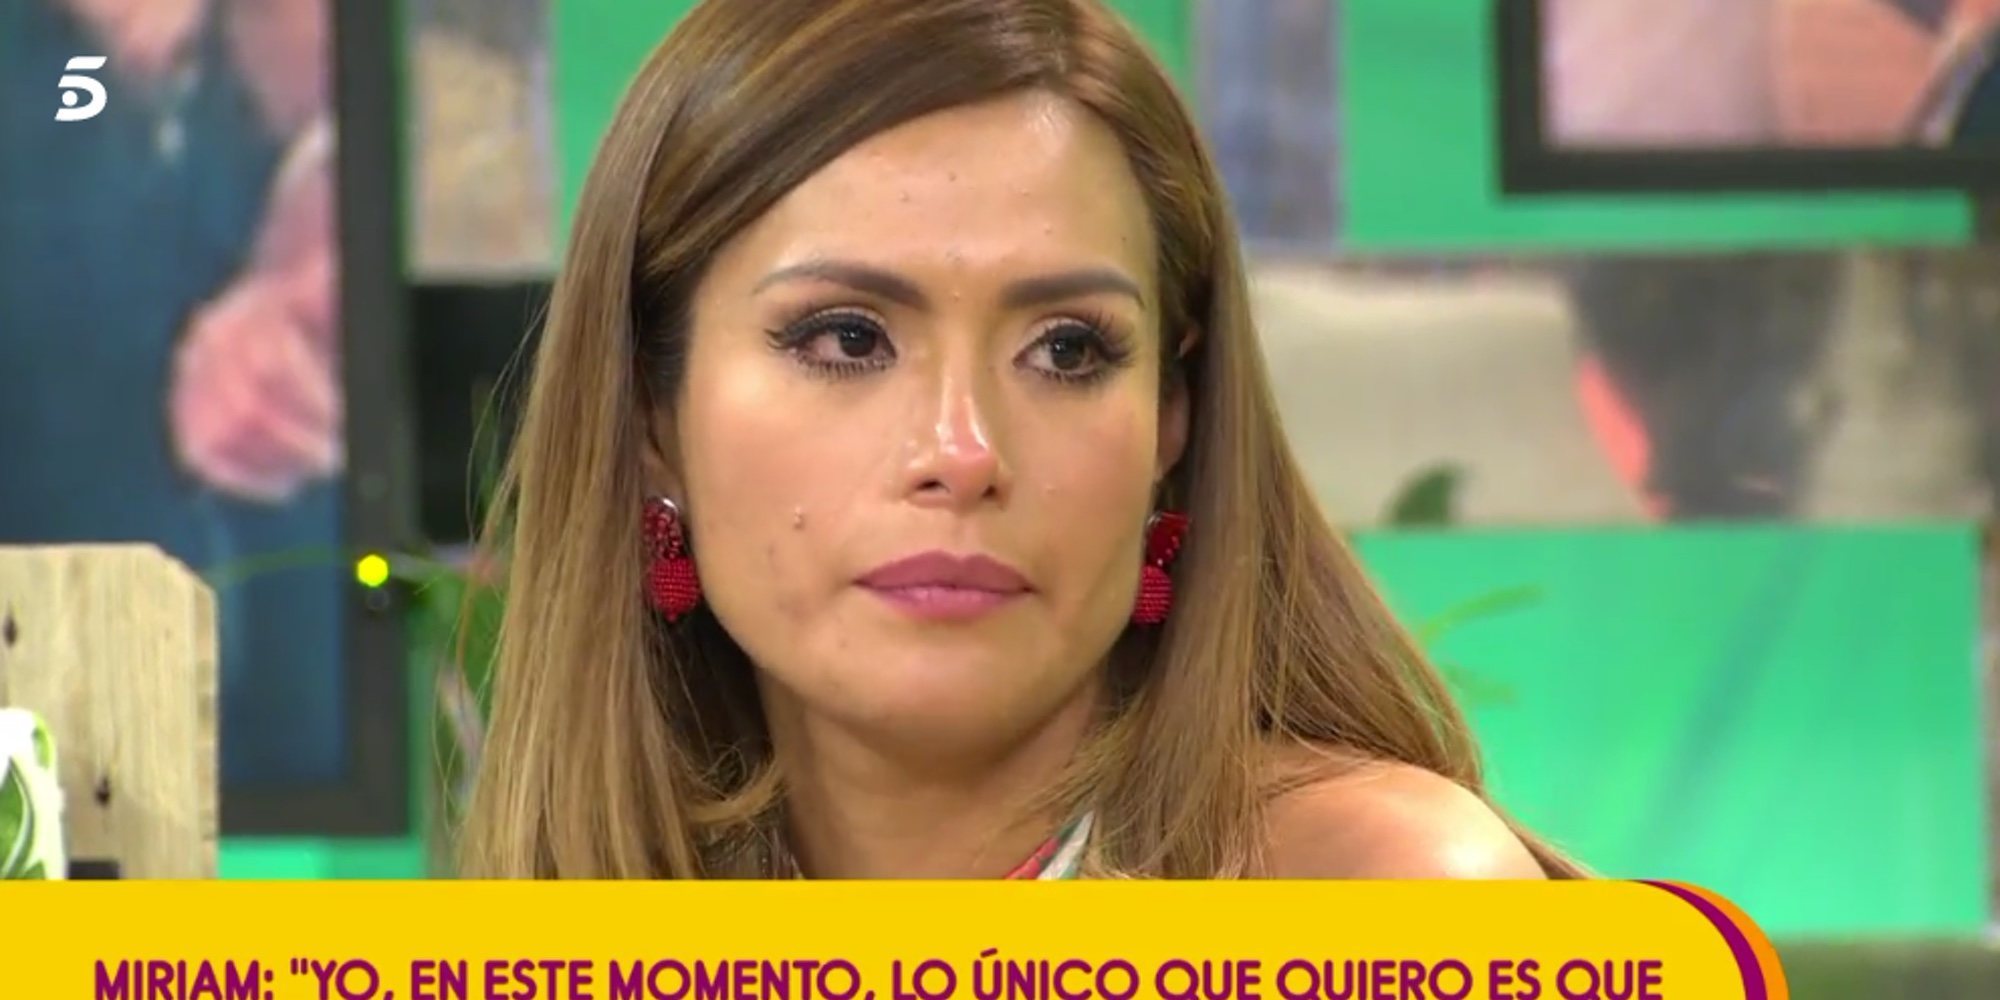 El mosqueo de Miriam Saavedra con Carlos Lozano en 'Sálvame': "Espero que luego no me llames arrepentido"